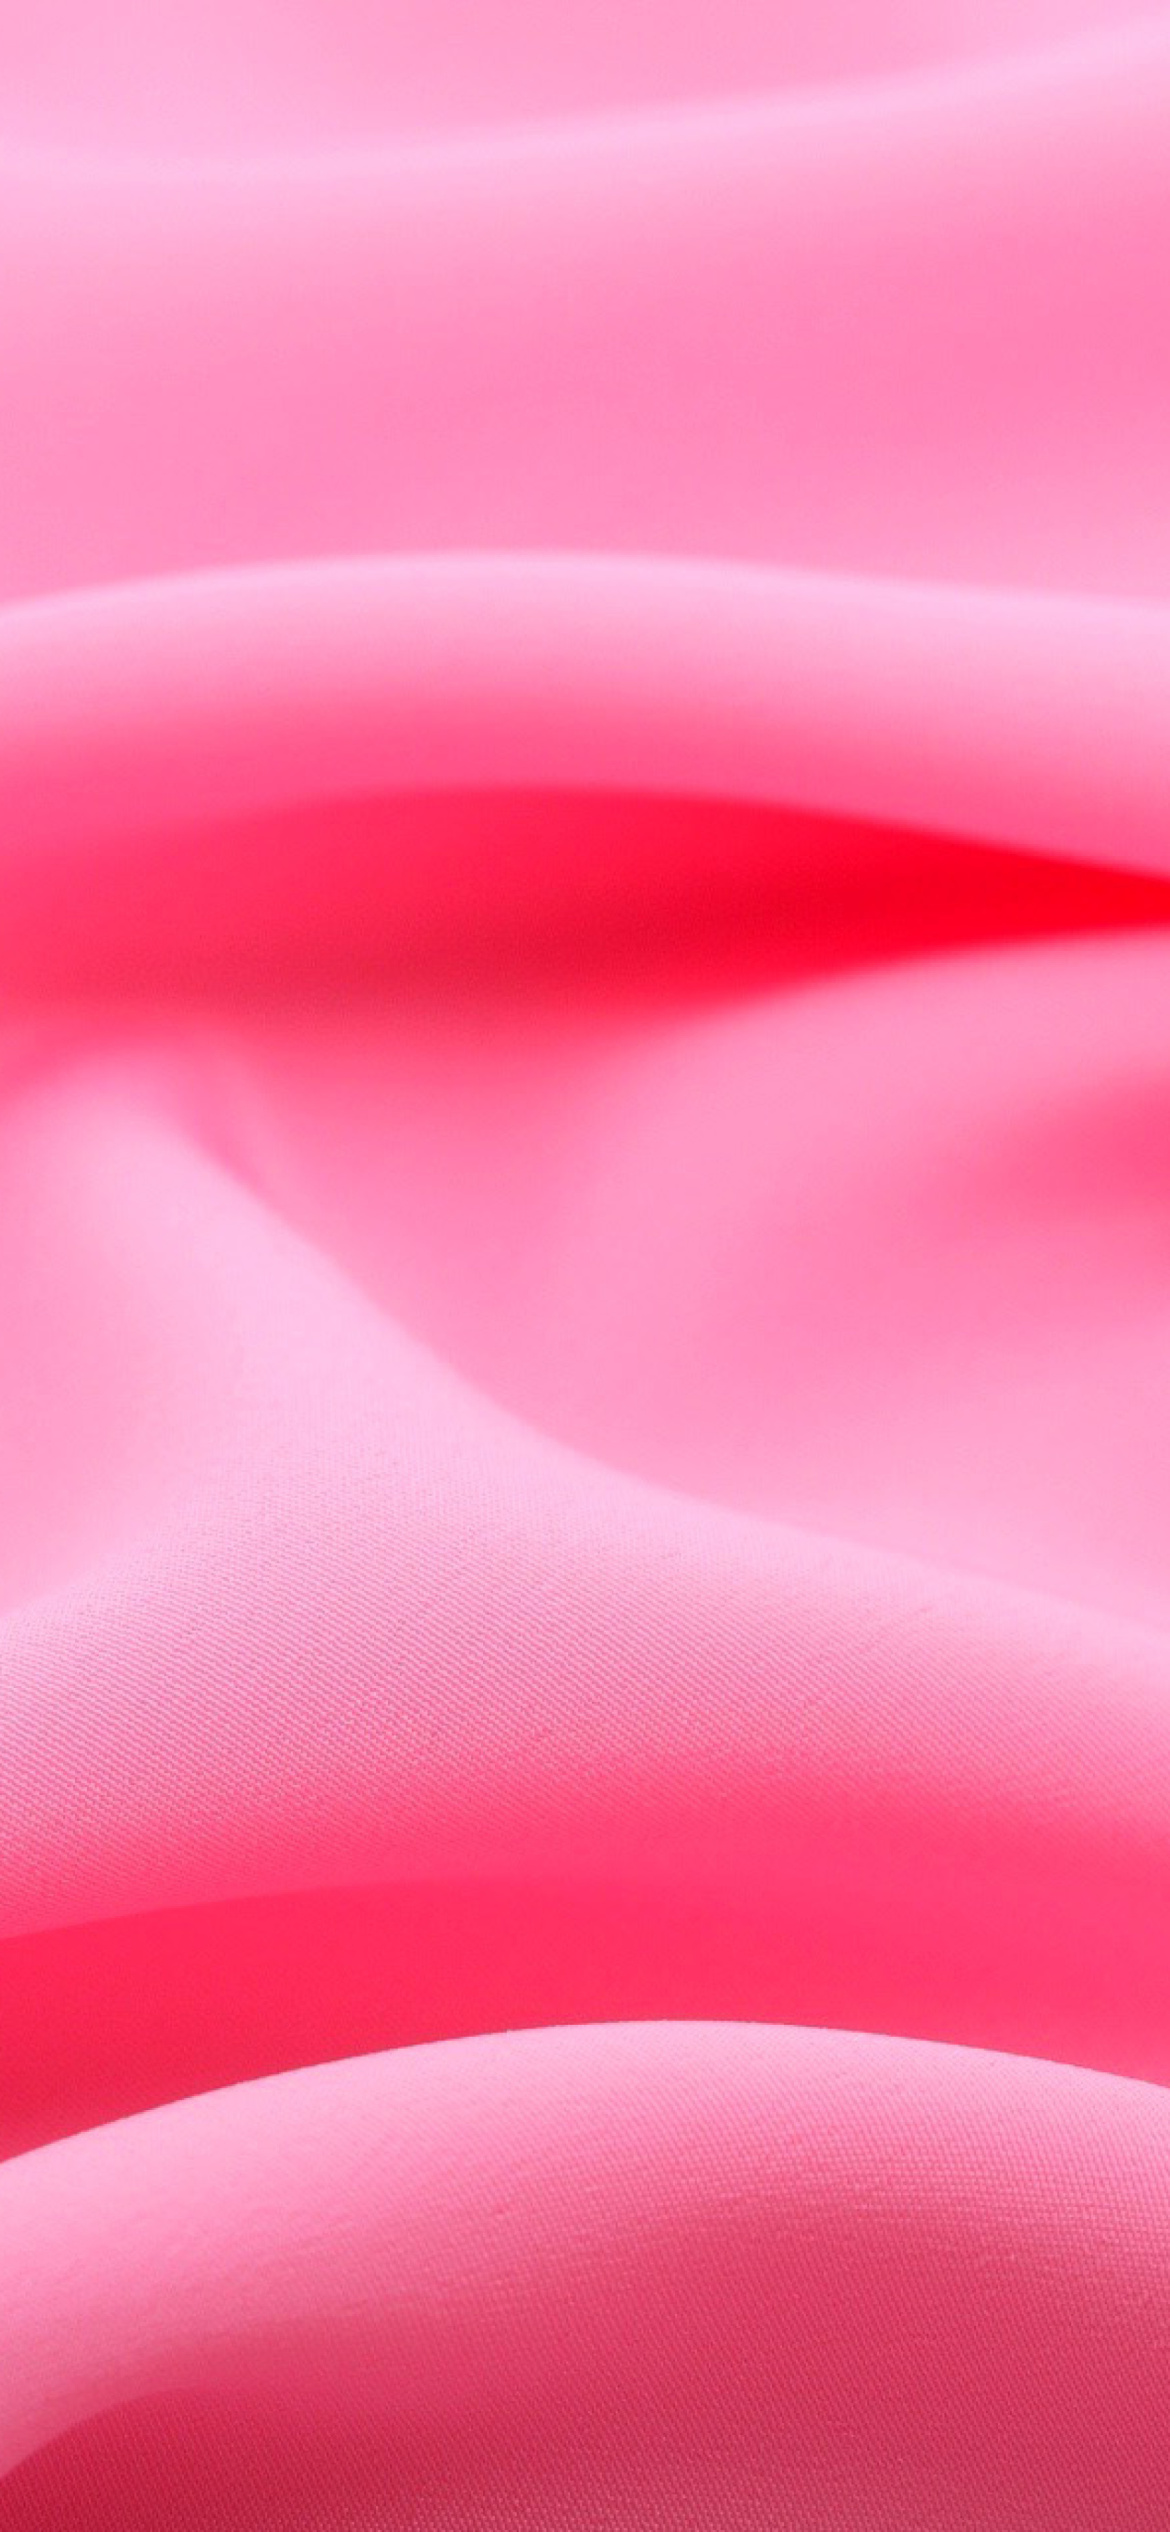 Das Pink Silk Fabric Wallpaper 1170x2532